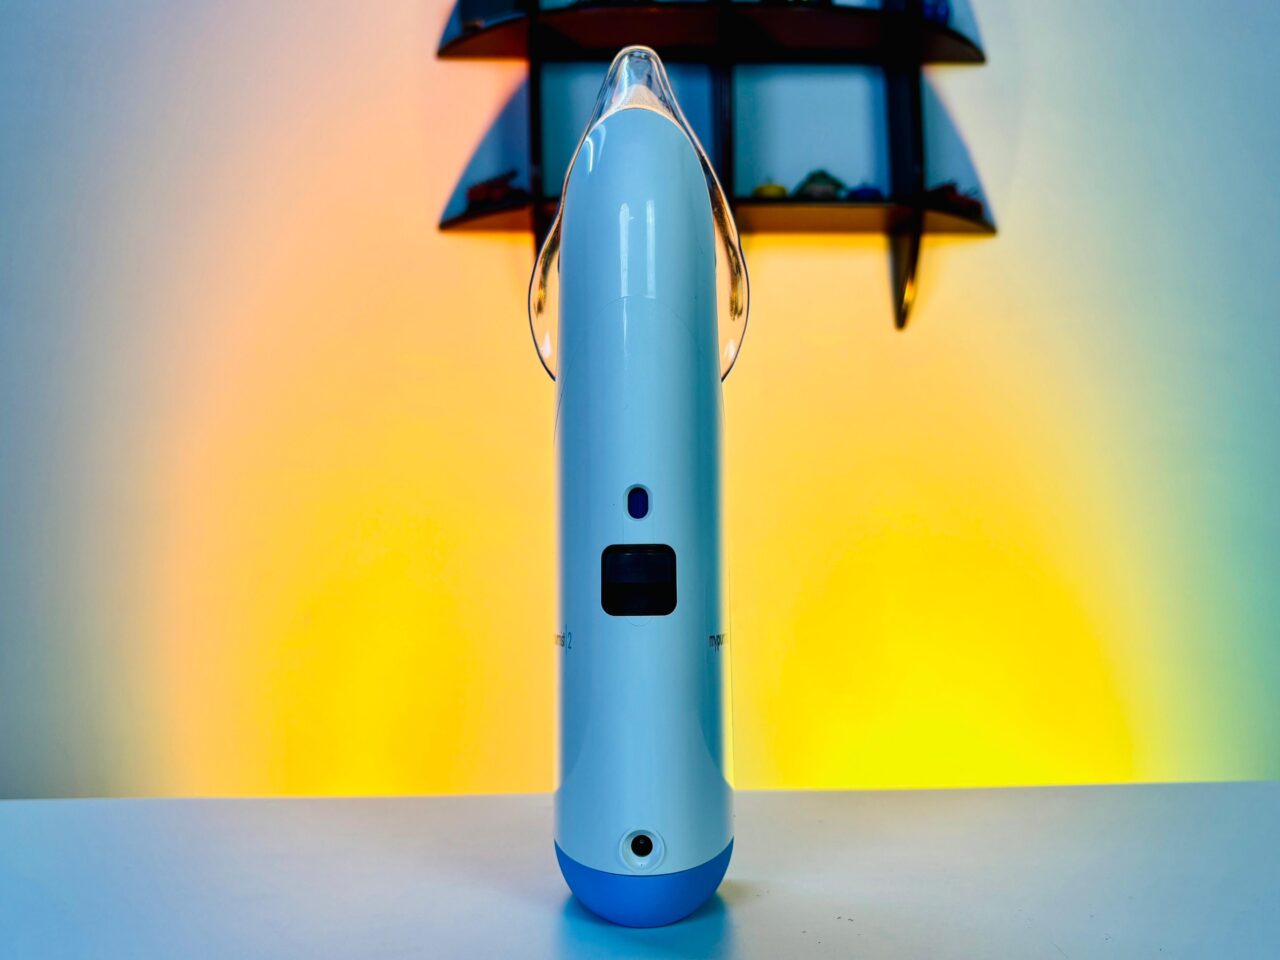 Mypurmist 2 Handheld Steam Inhaler Review (1)